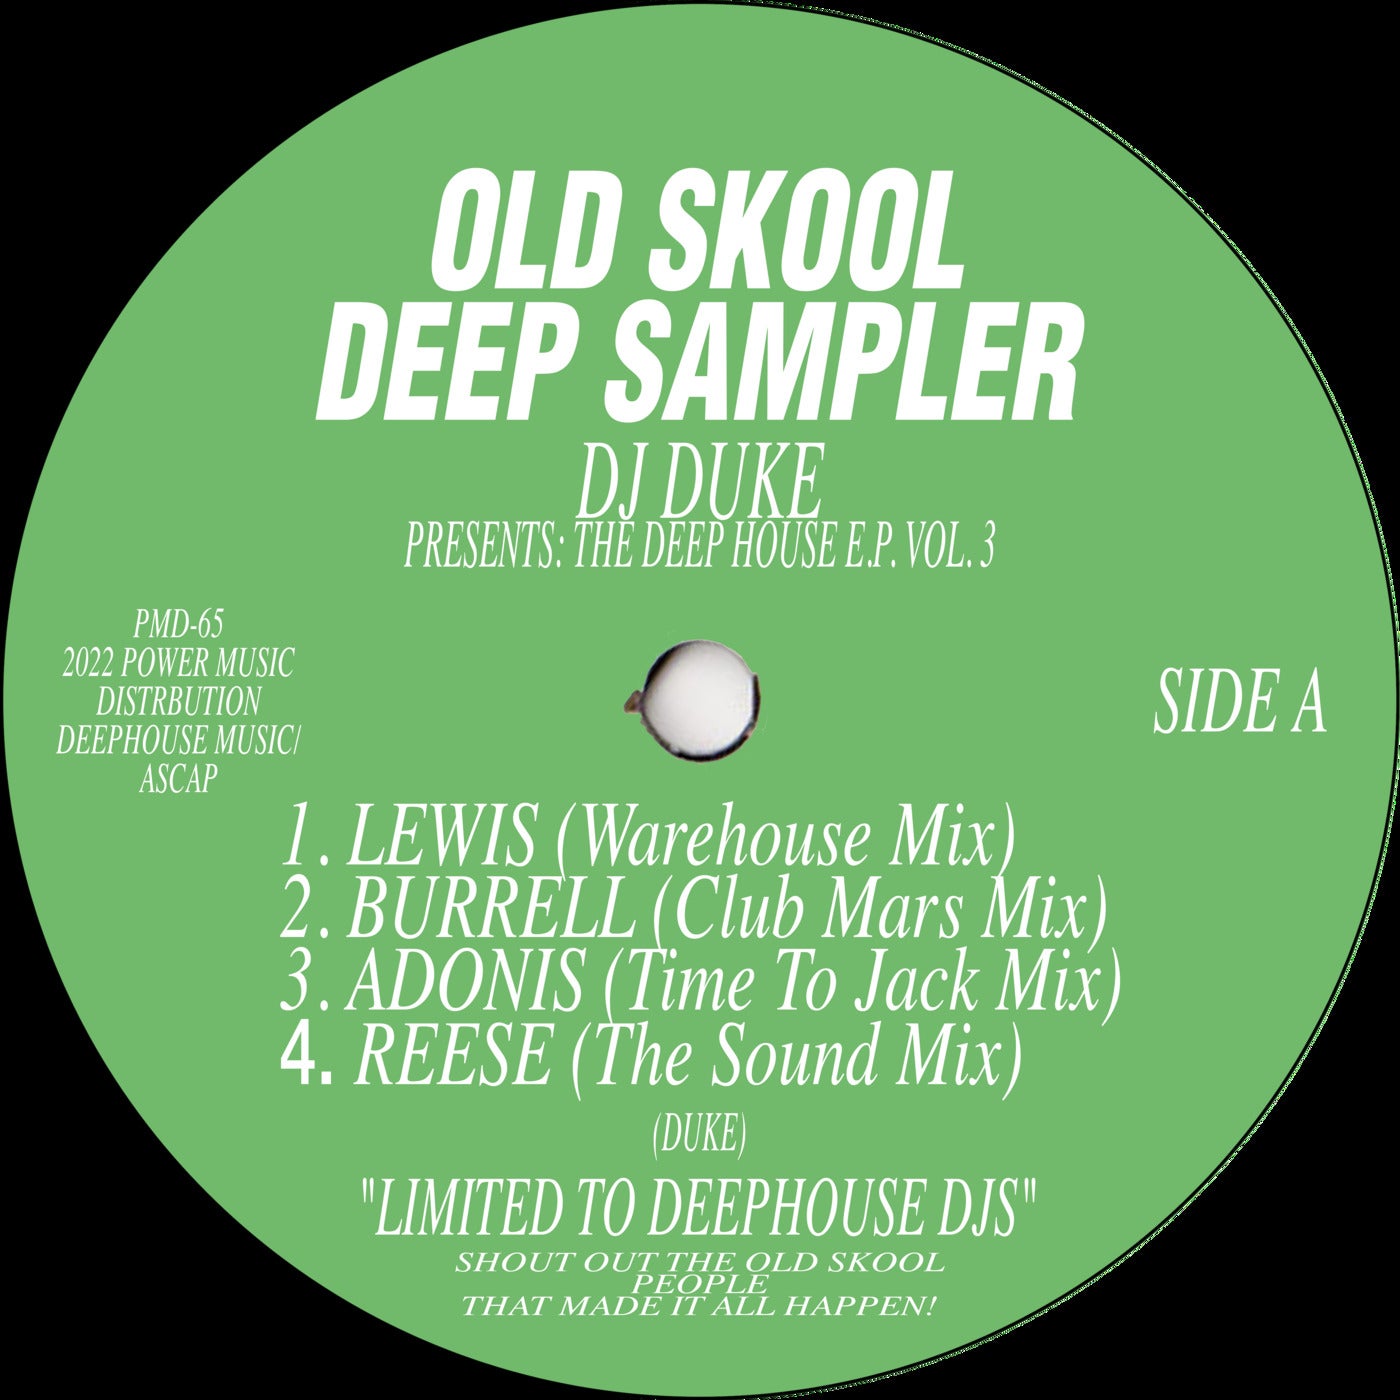 Old Skool Deep Sampler Vol. 3